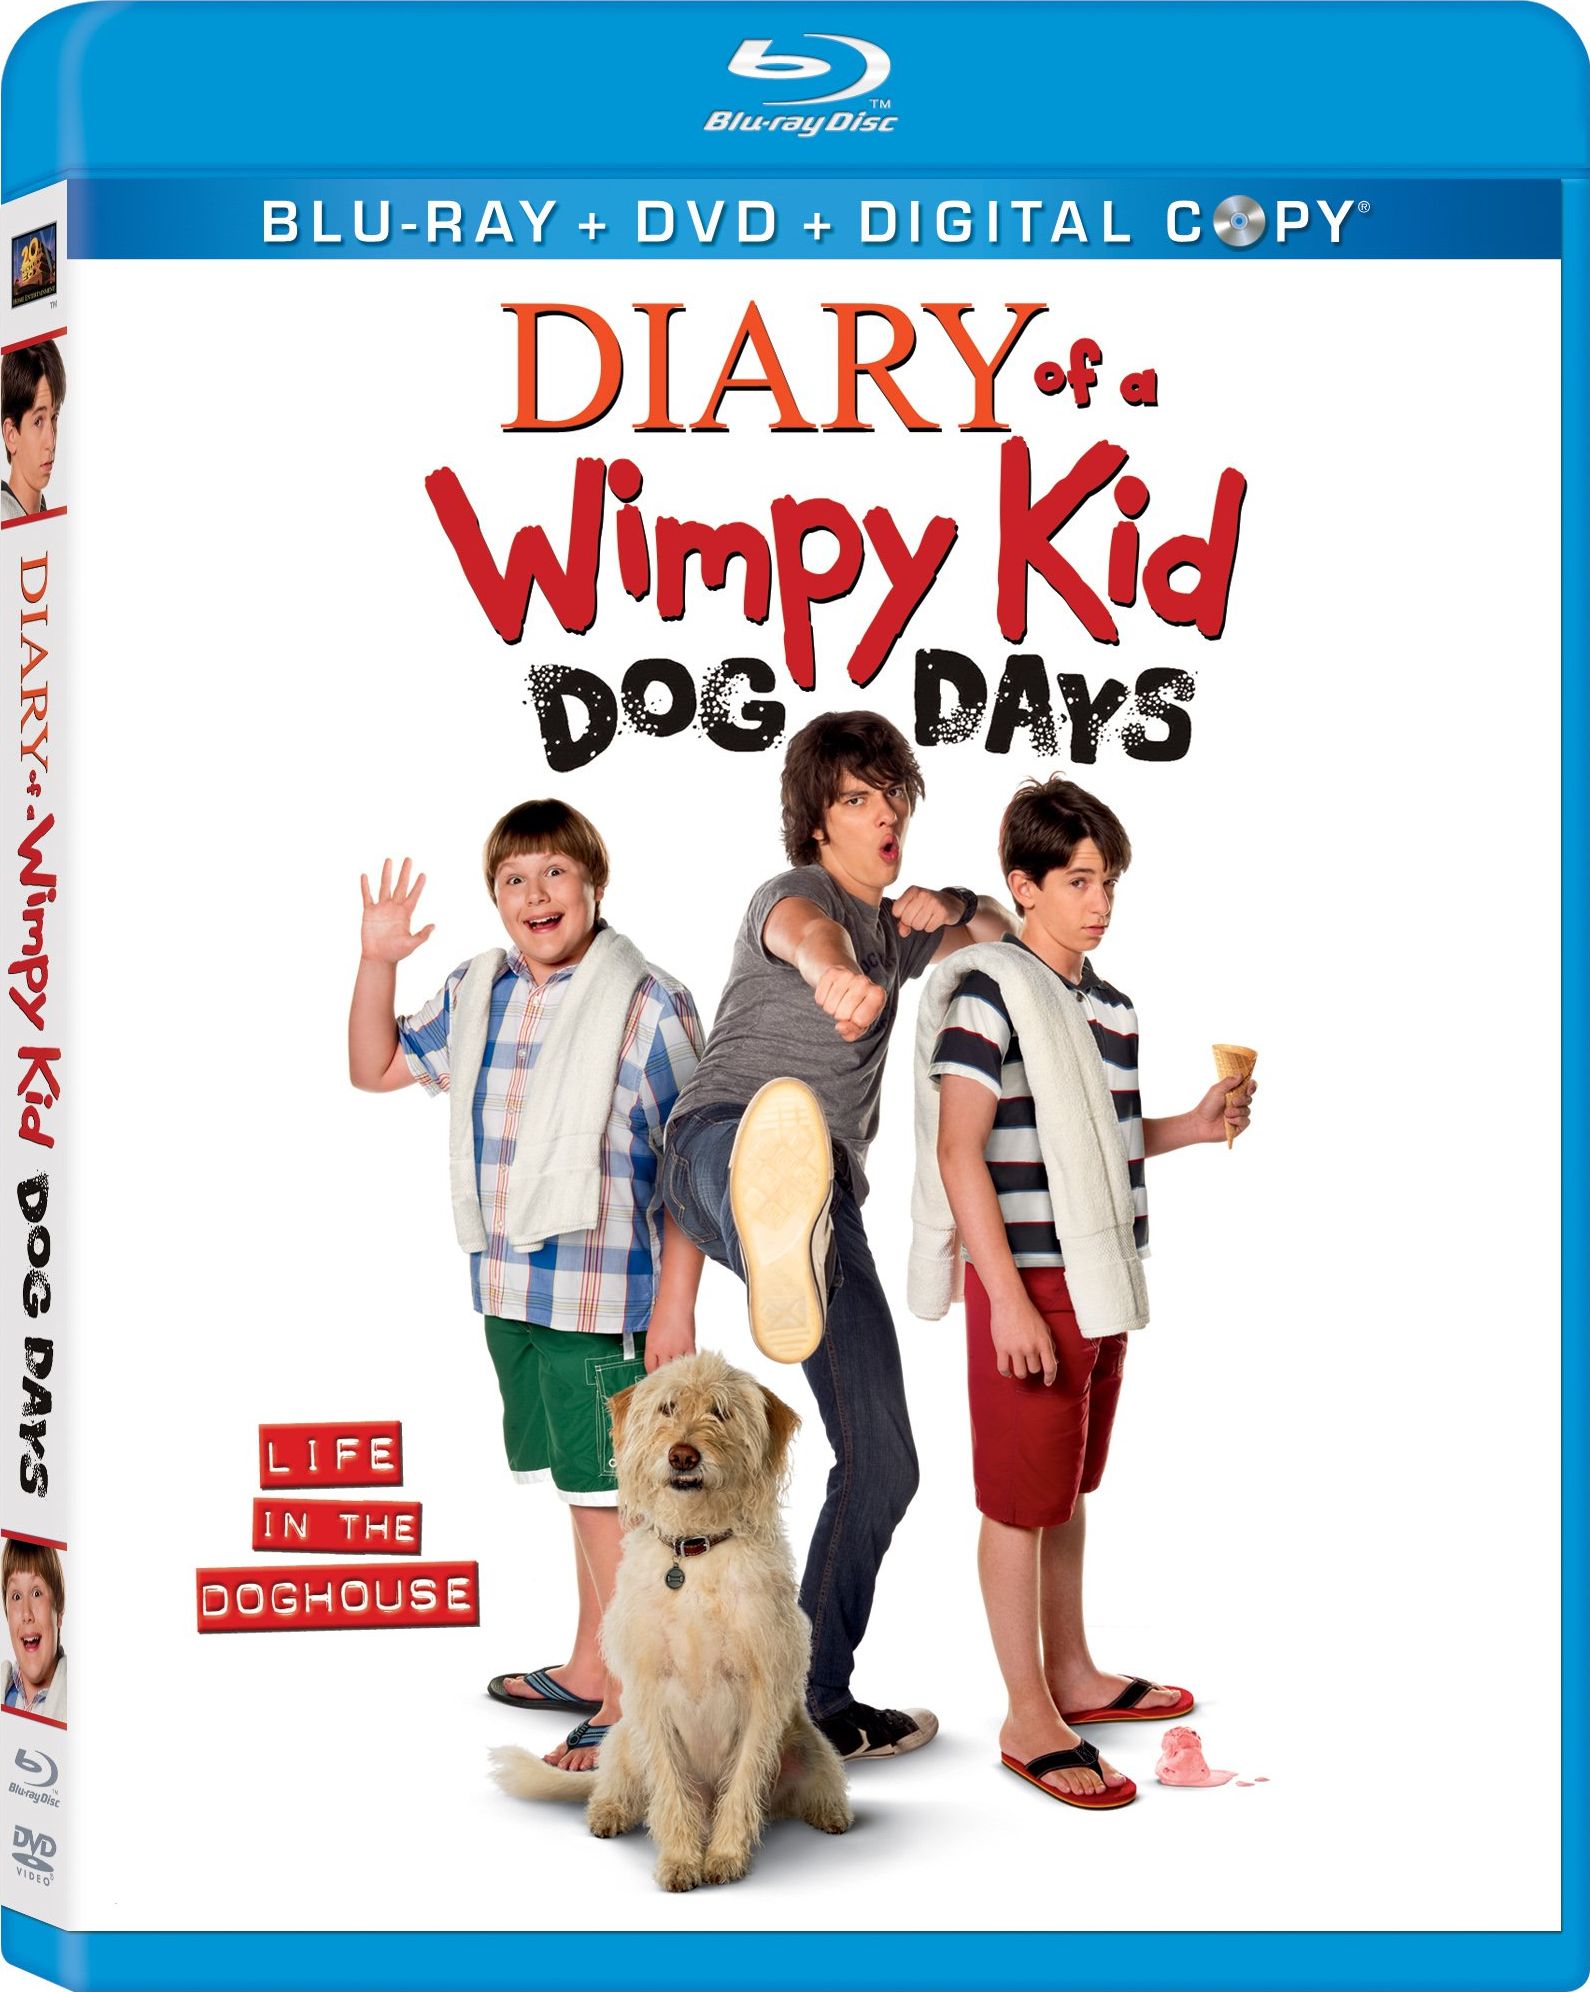 Комедия дневники. Семейные комедии 2012. Diary of a Wimpy Kid: Dog Days 2012. Diary of a Wimpy Kid.